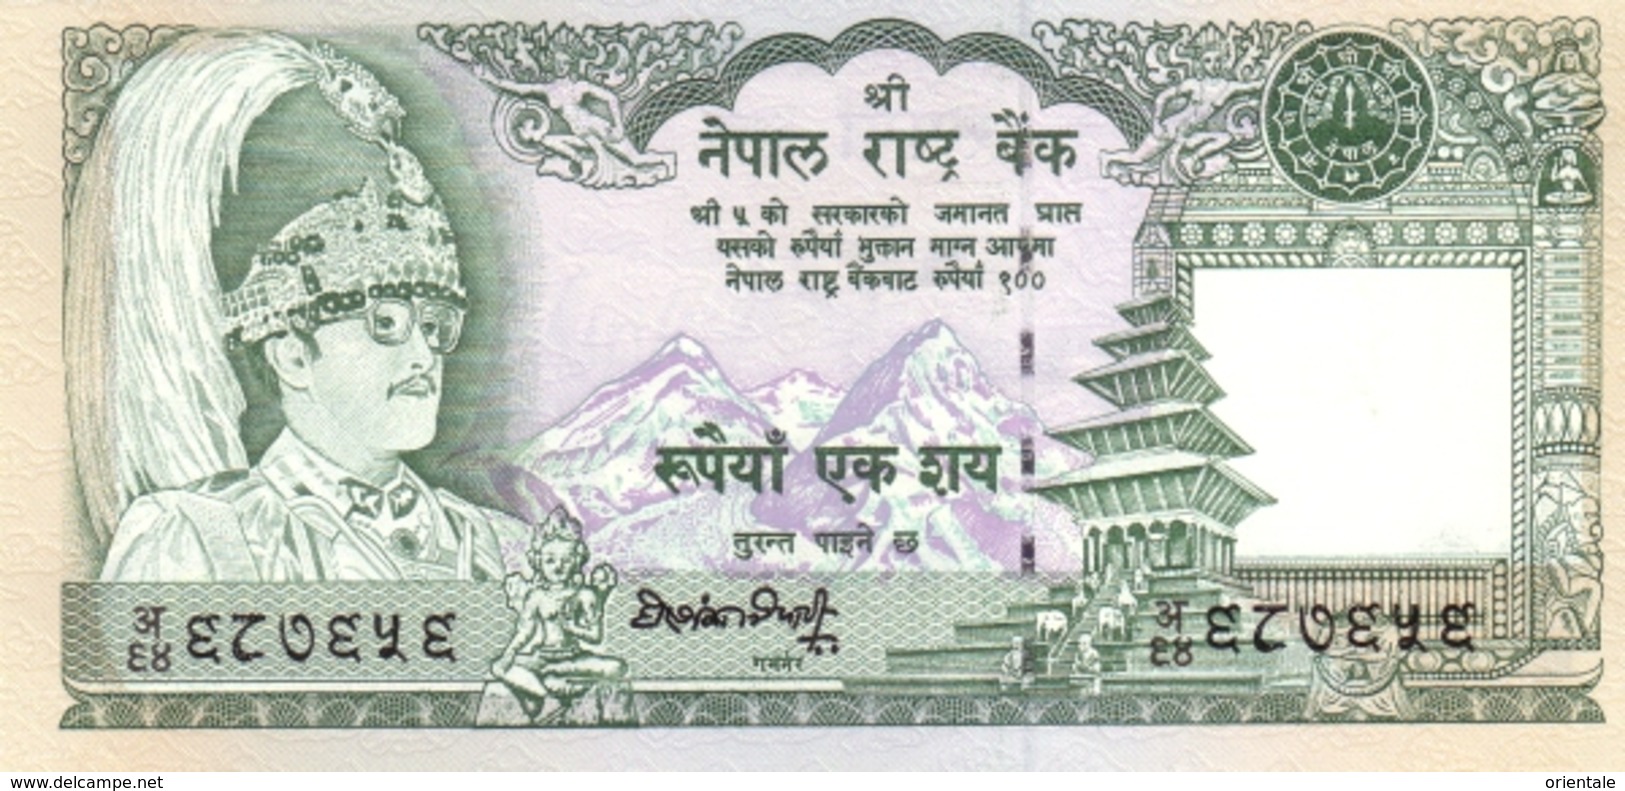 NEPAL P. 34d 100 R 1990 UNC - Népal